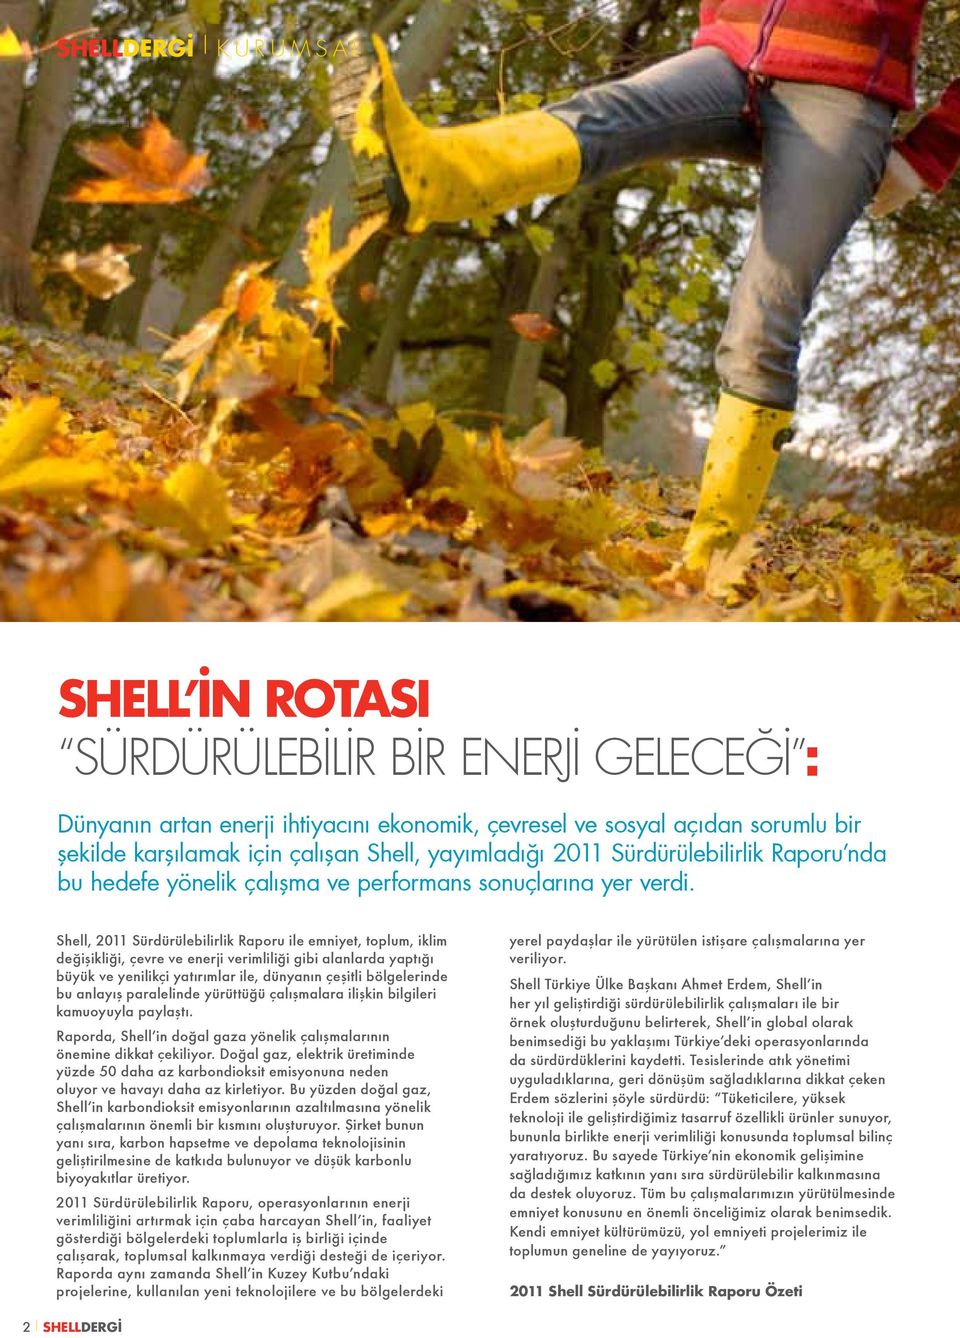 Shell, 2011 Sürdürülebilirlik Raporu ile emniyet, toplum, iklim değişikliği, çevre ve enerji verimliliği gibi alanlarda yaptığı büyük ve yenilikçi yatırımlar ile, dünyanın çeşitli bölgelerinde bu